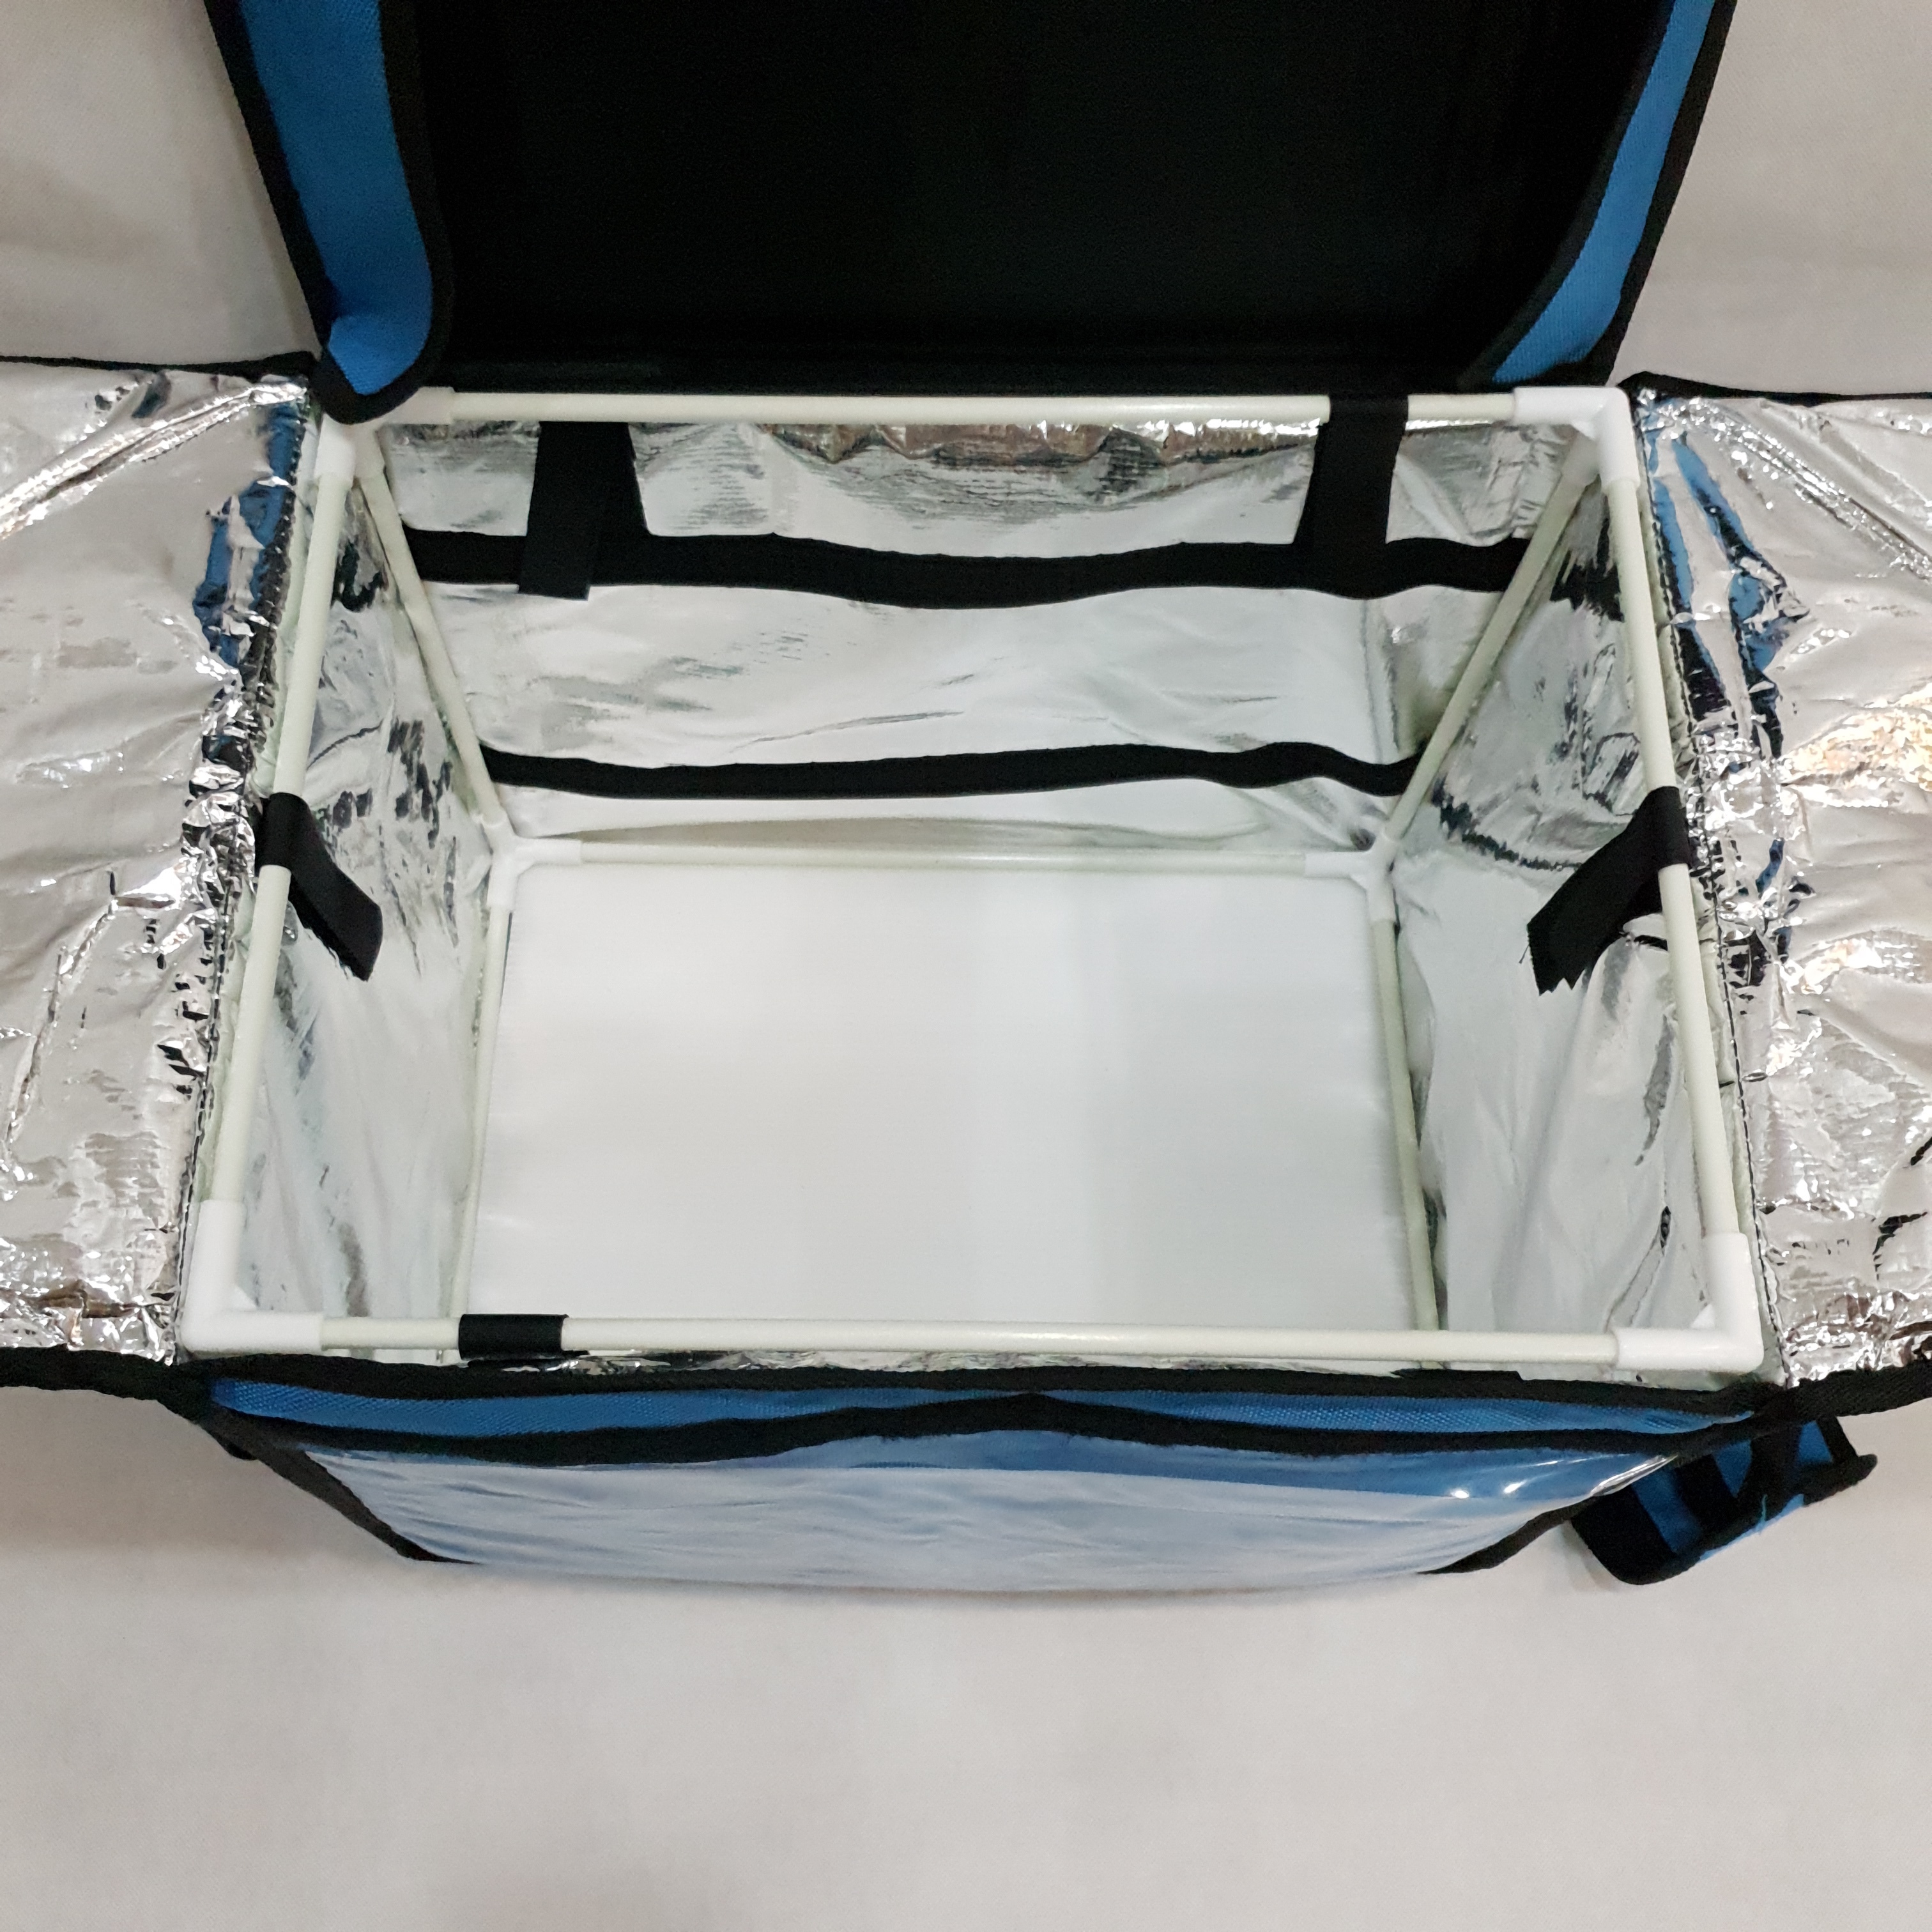 Túi giữ nhiệt giao hàng 44 lít xanh dương